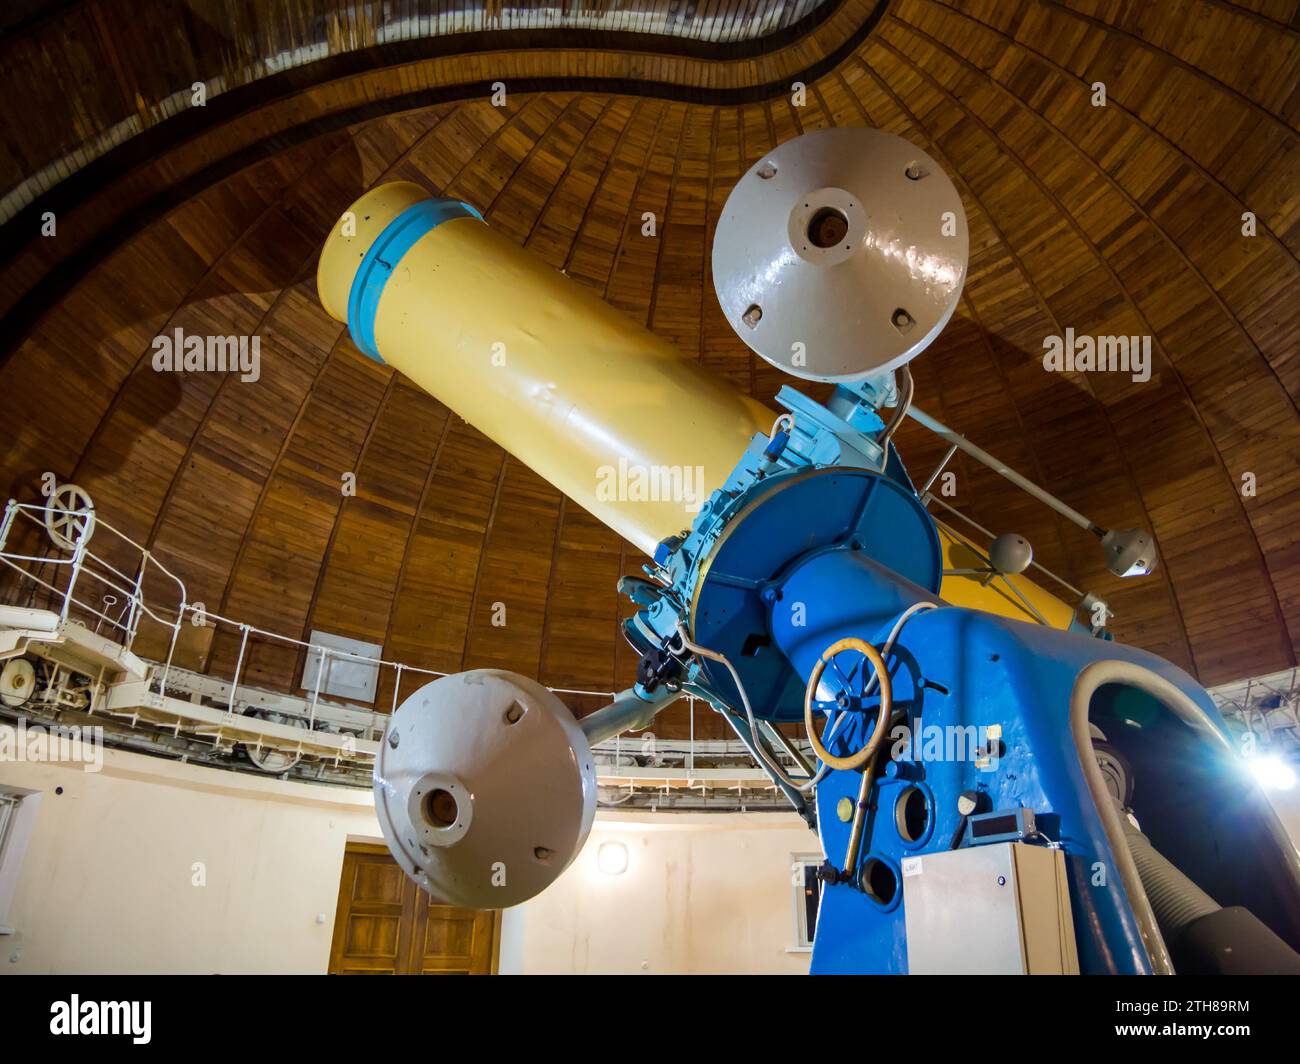 Nauchniy, Krim - 18. September 2021: Teleskop von Carl Zeiss Jena. Das Astrophysikalische Observatorium Von Krim. Wissenschaftliches Dorf, Krim Stockfoto